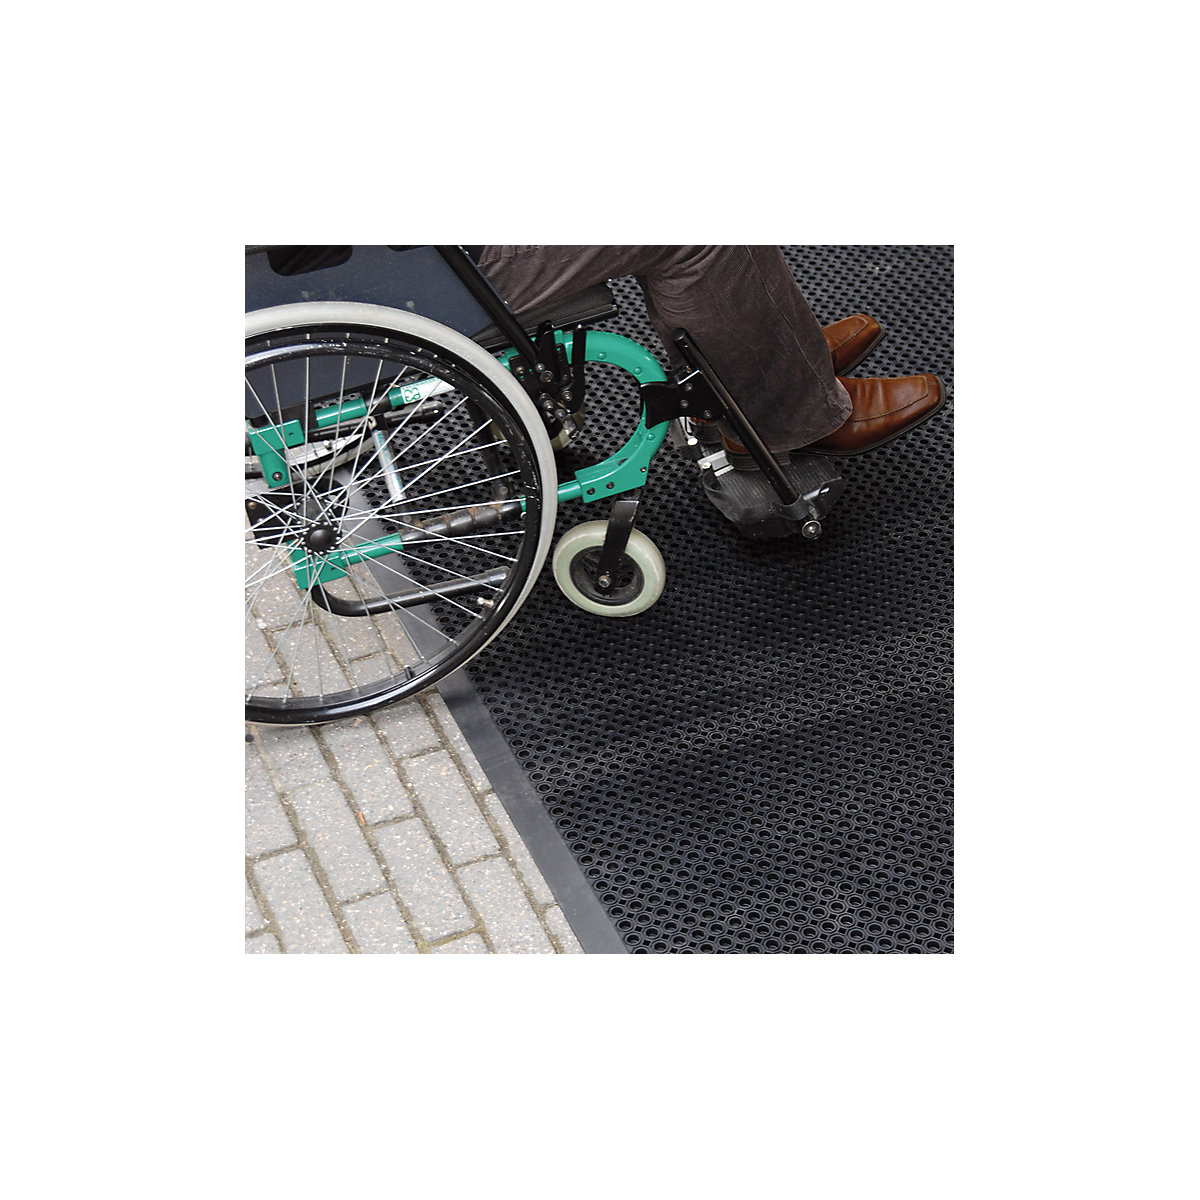 Mata wychwytująca brud, nadająca się do przejeżdżania wózkiem inwalidzkim – NOTRAX (Zdjęcie produktu 4)-3